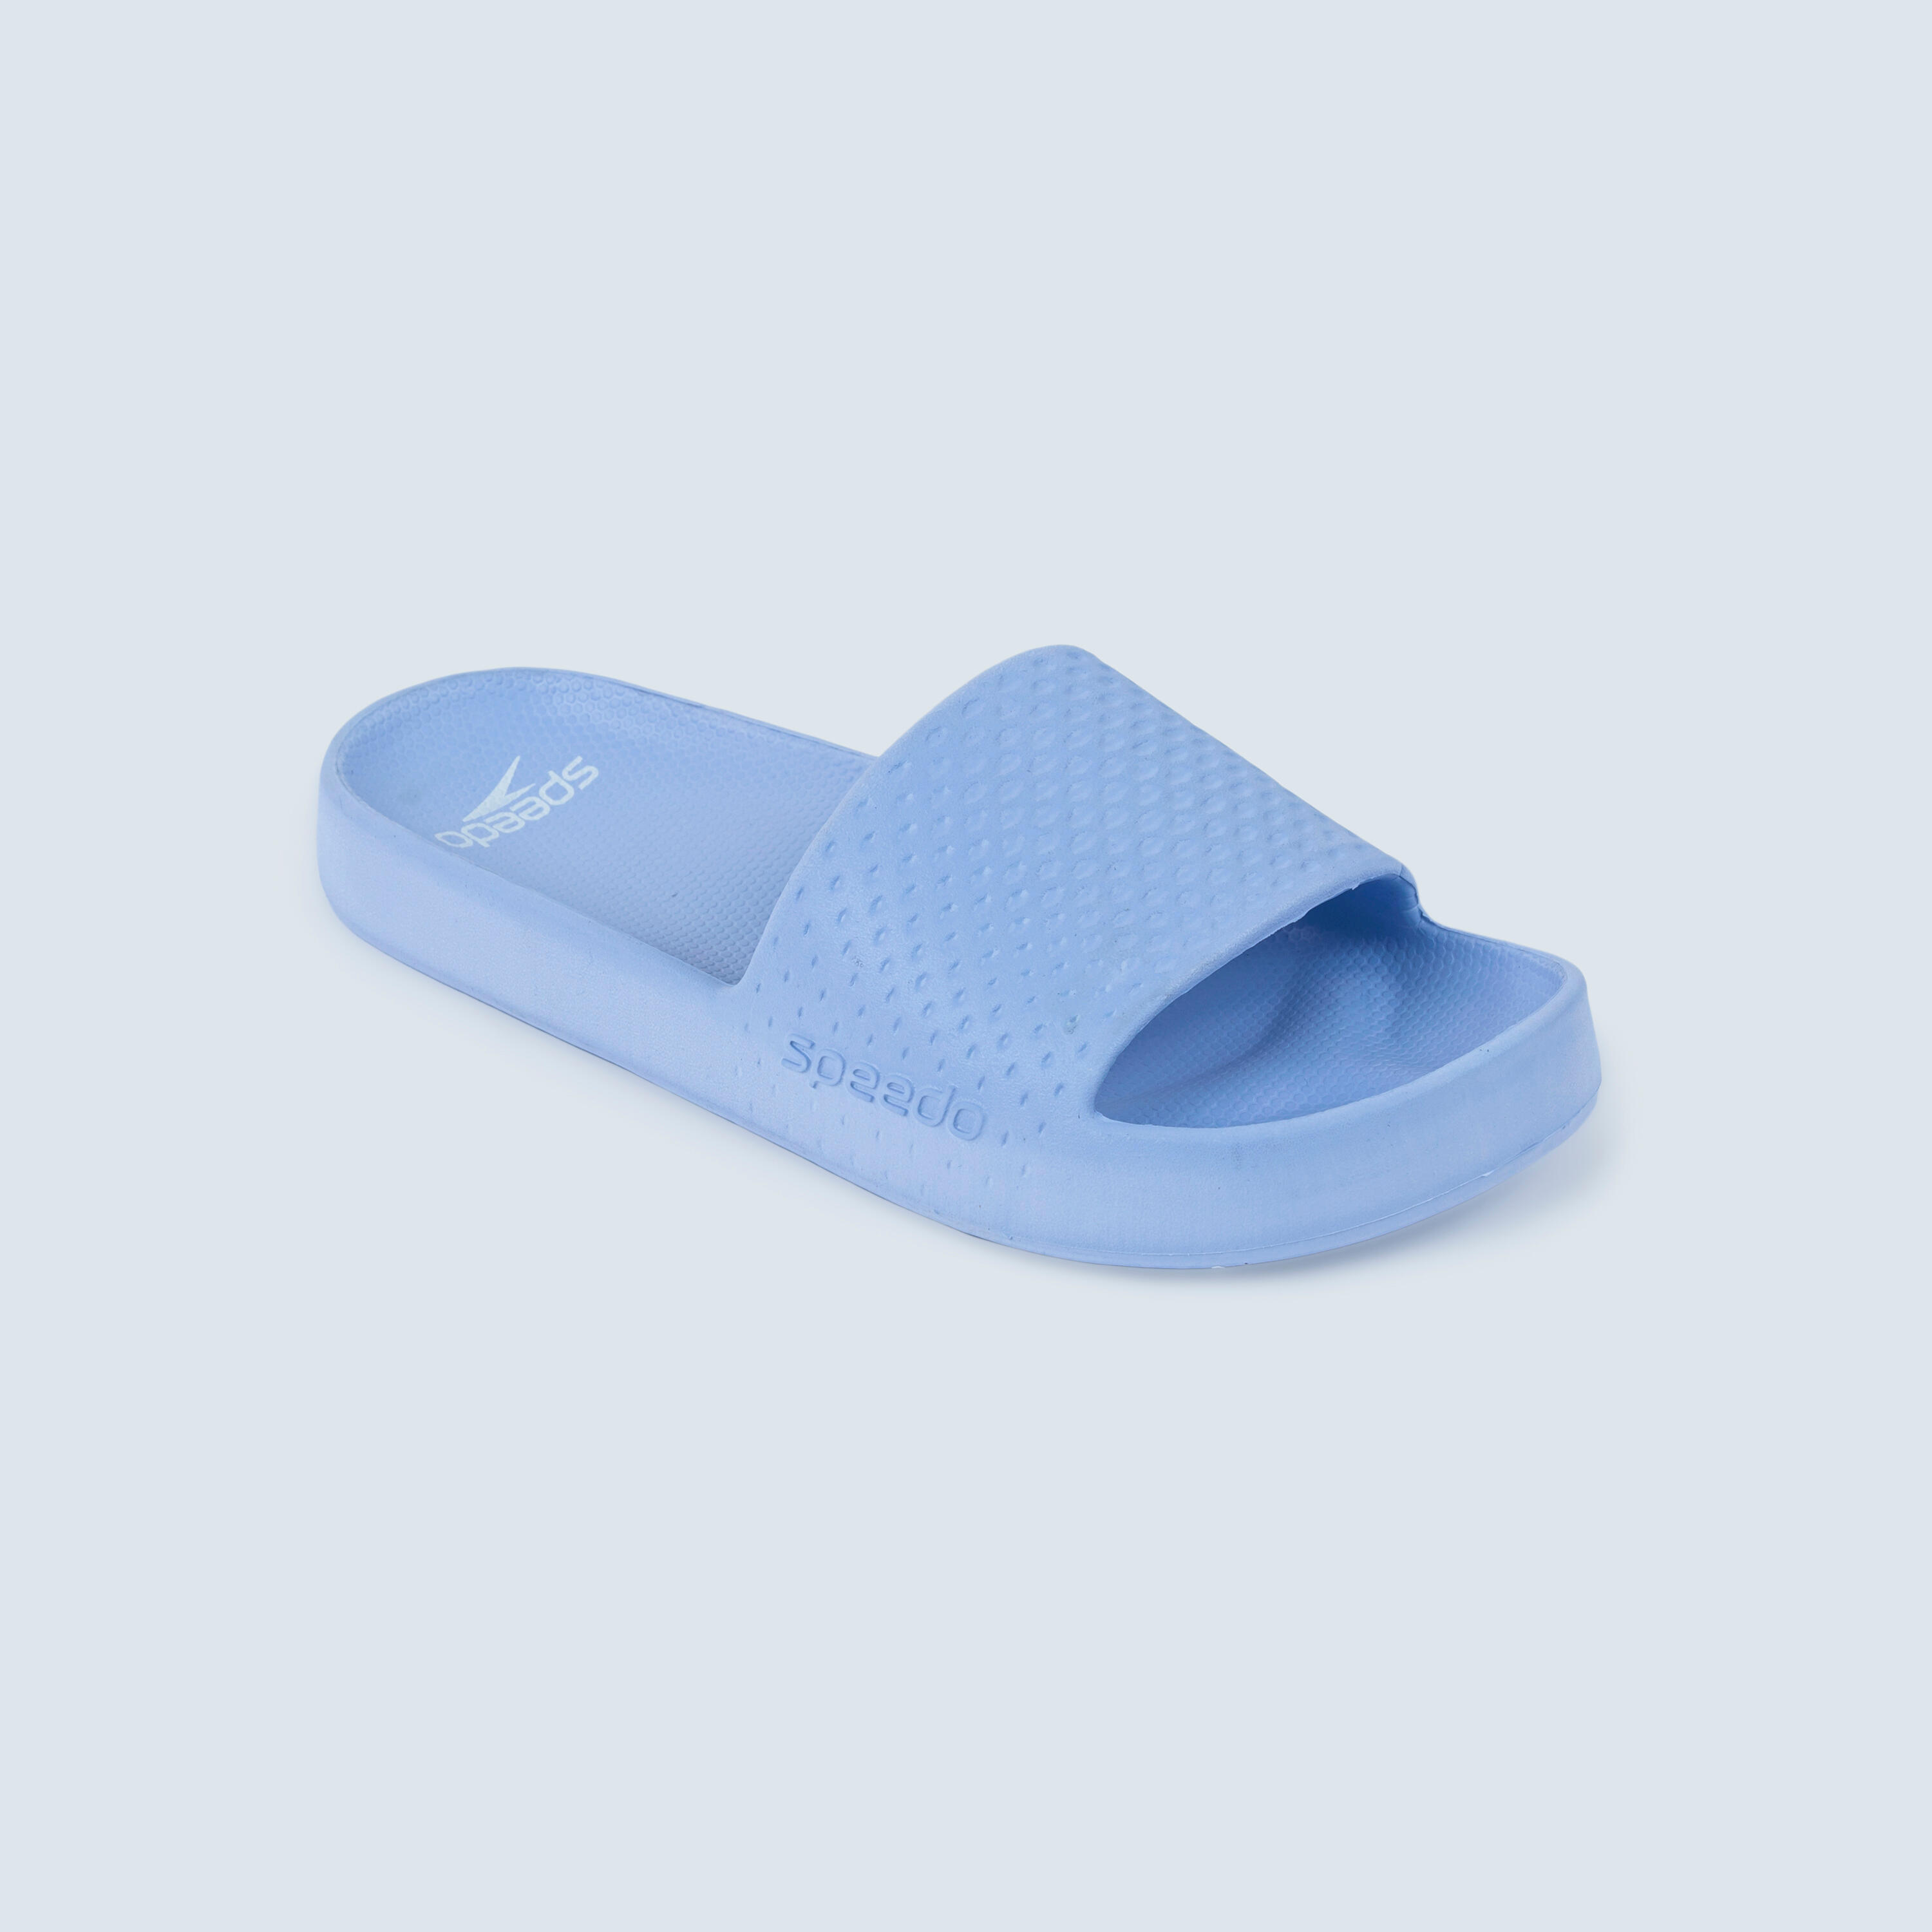 SPEEDO ENTRY flipflop sandals blue 1/4